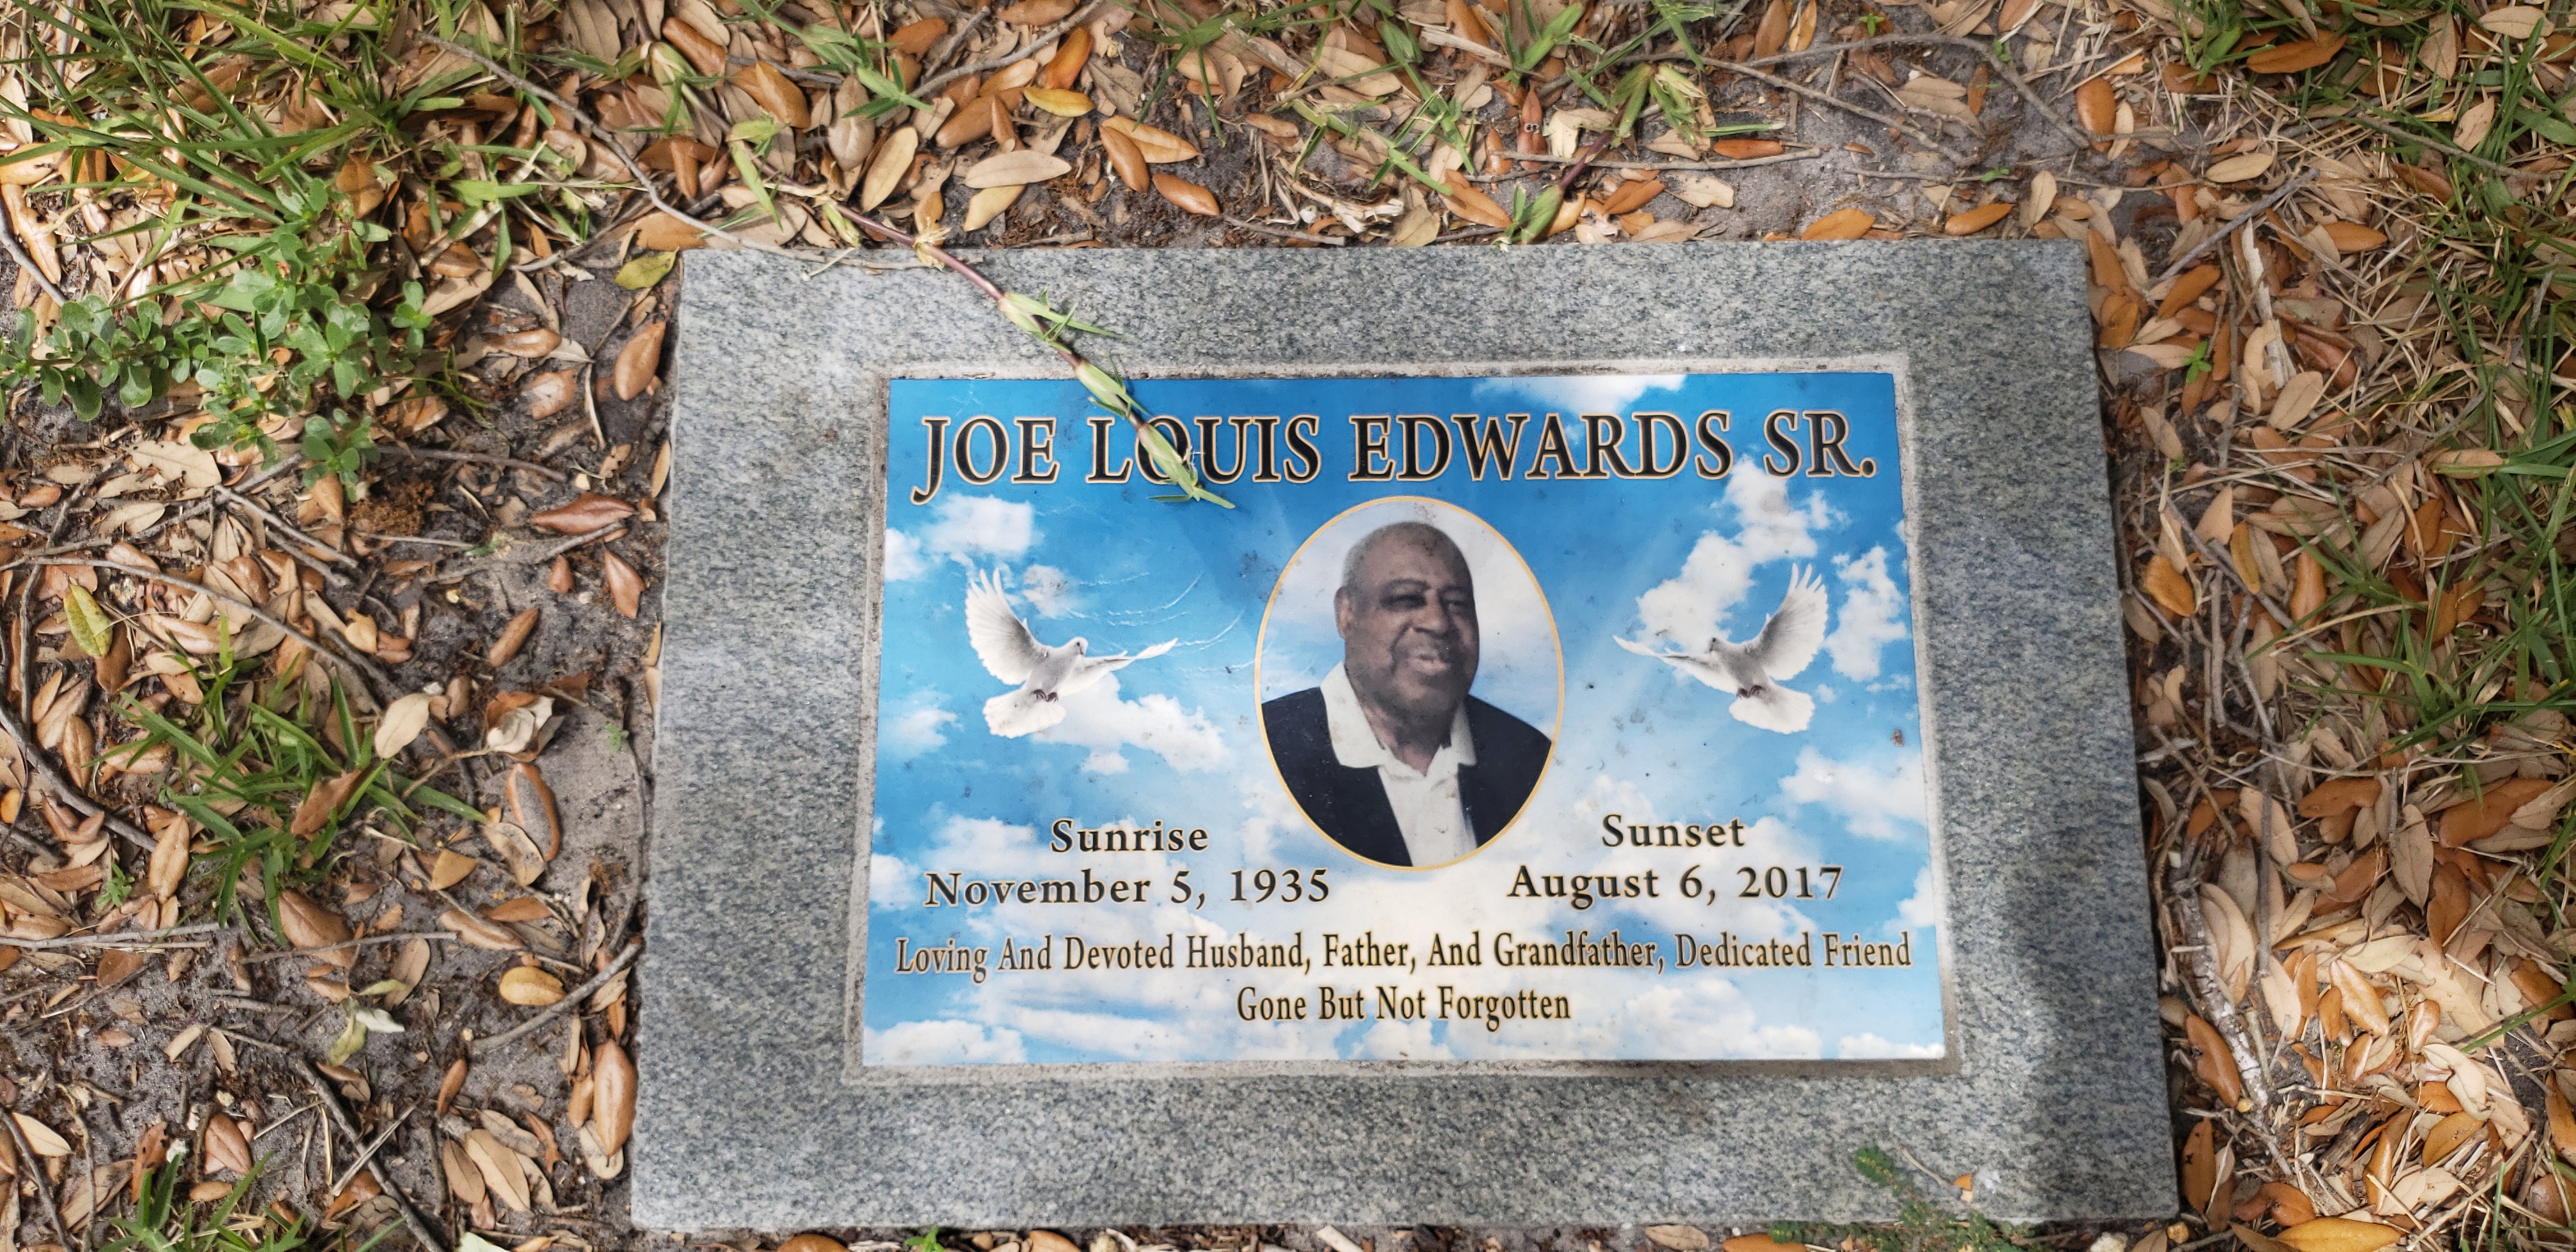 Joe Louis Edwards, Sr